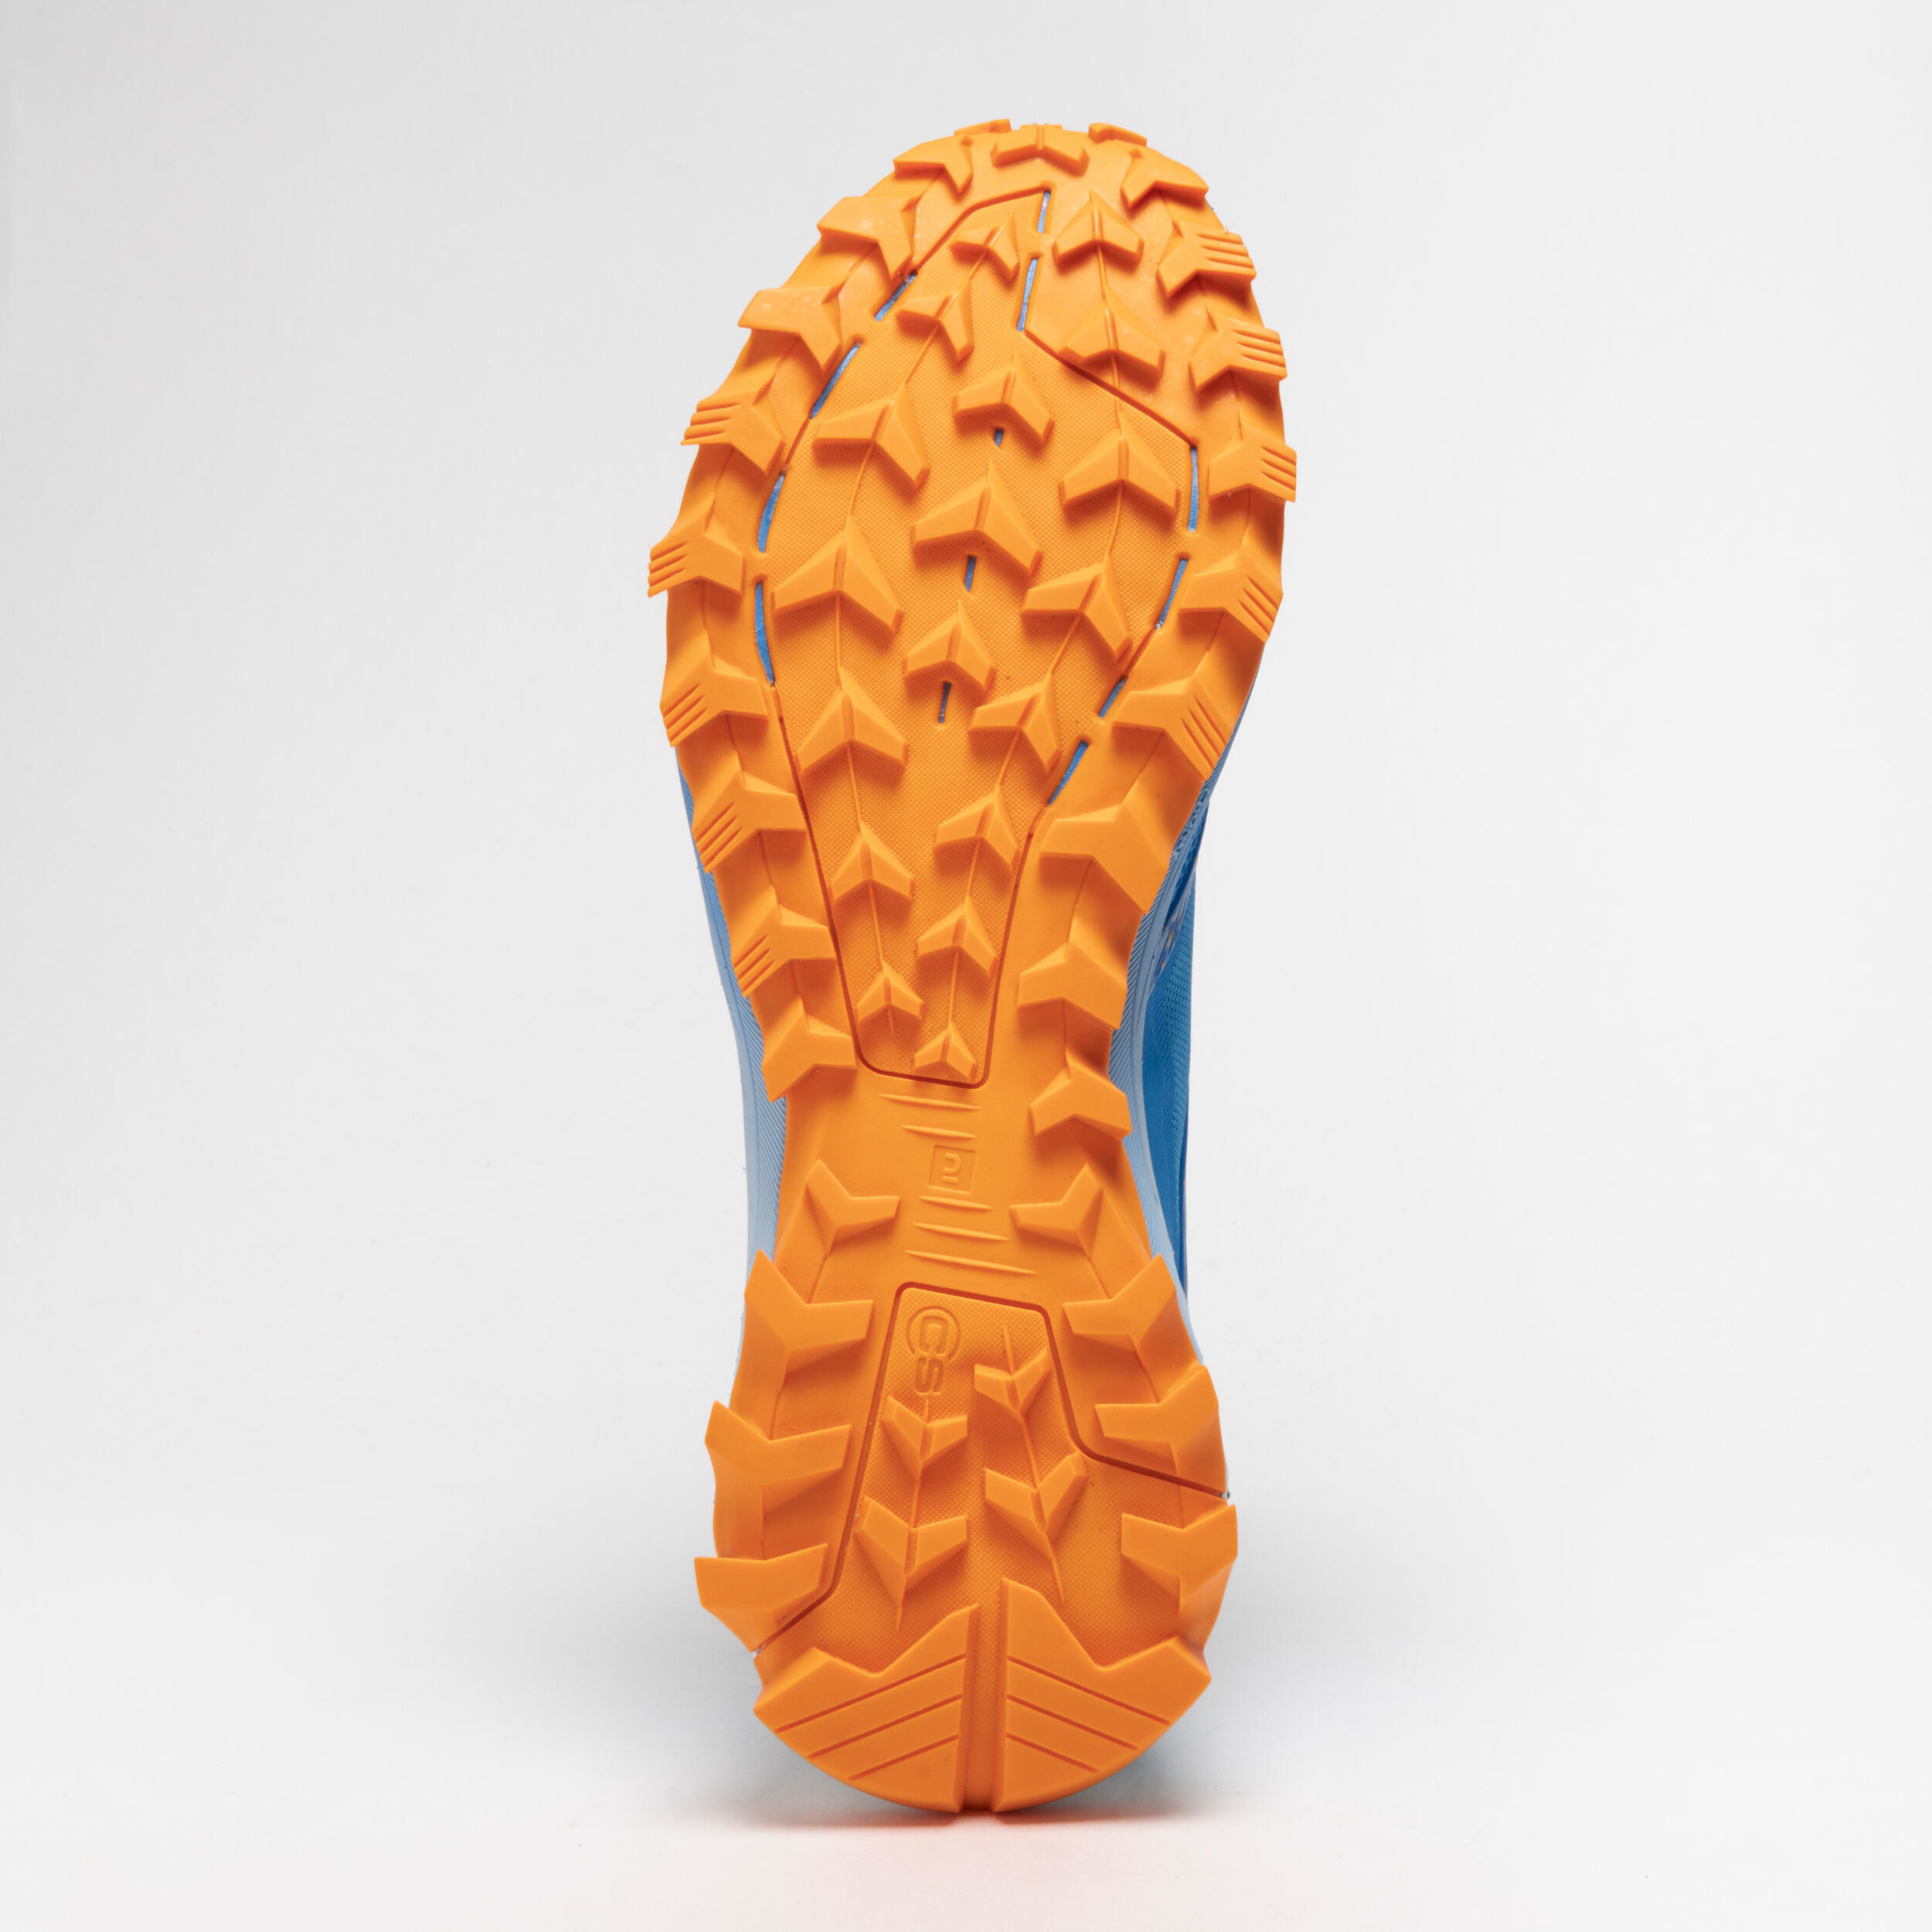 Chaussures de course en sentier pour homme - XT8 bleu et orange - EVADICT